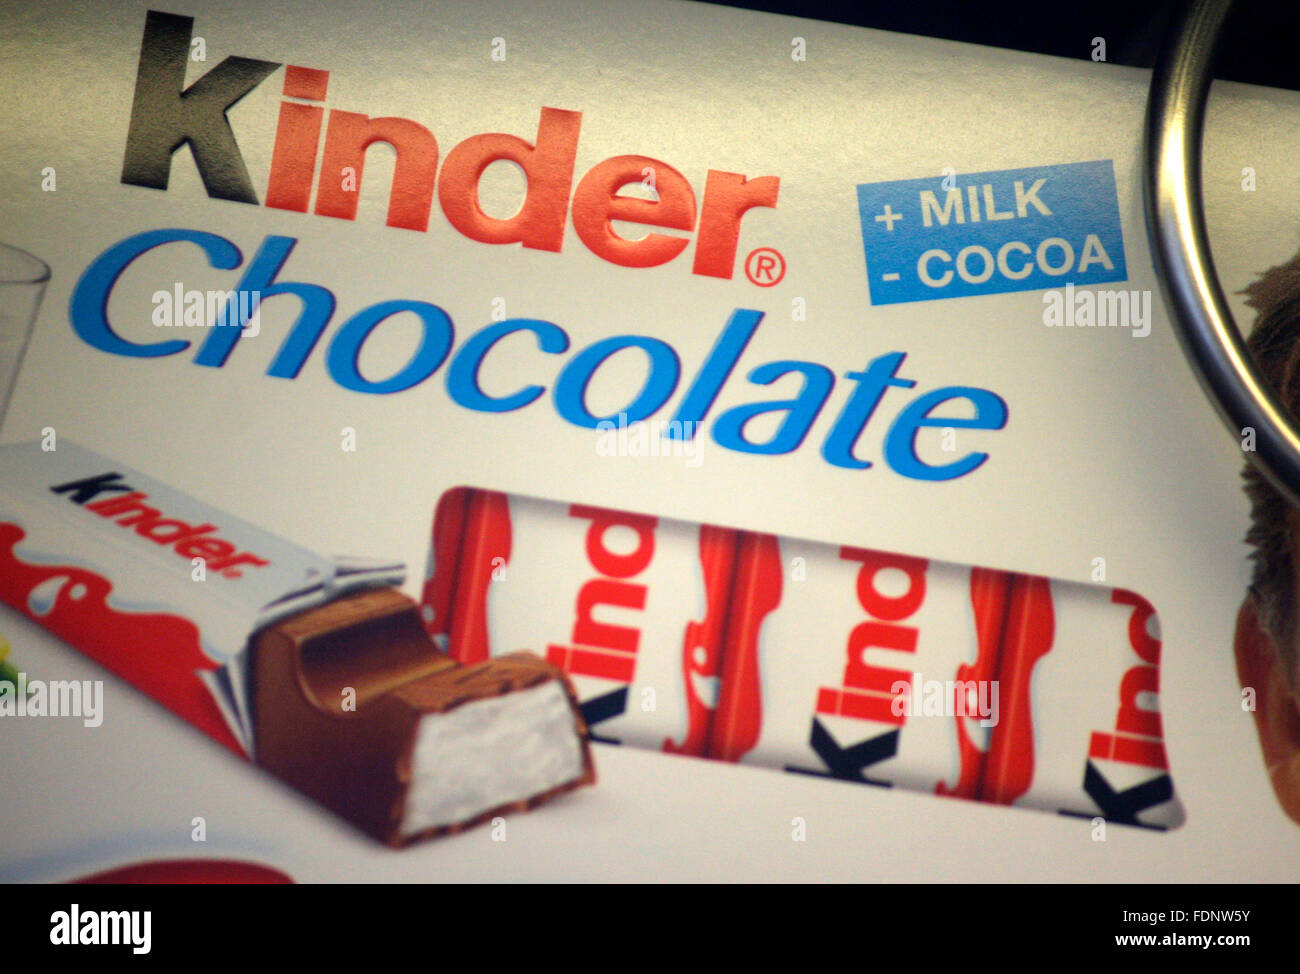 Markenname: "Kinder cioccolato", Berlino. Foto Stock